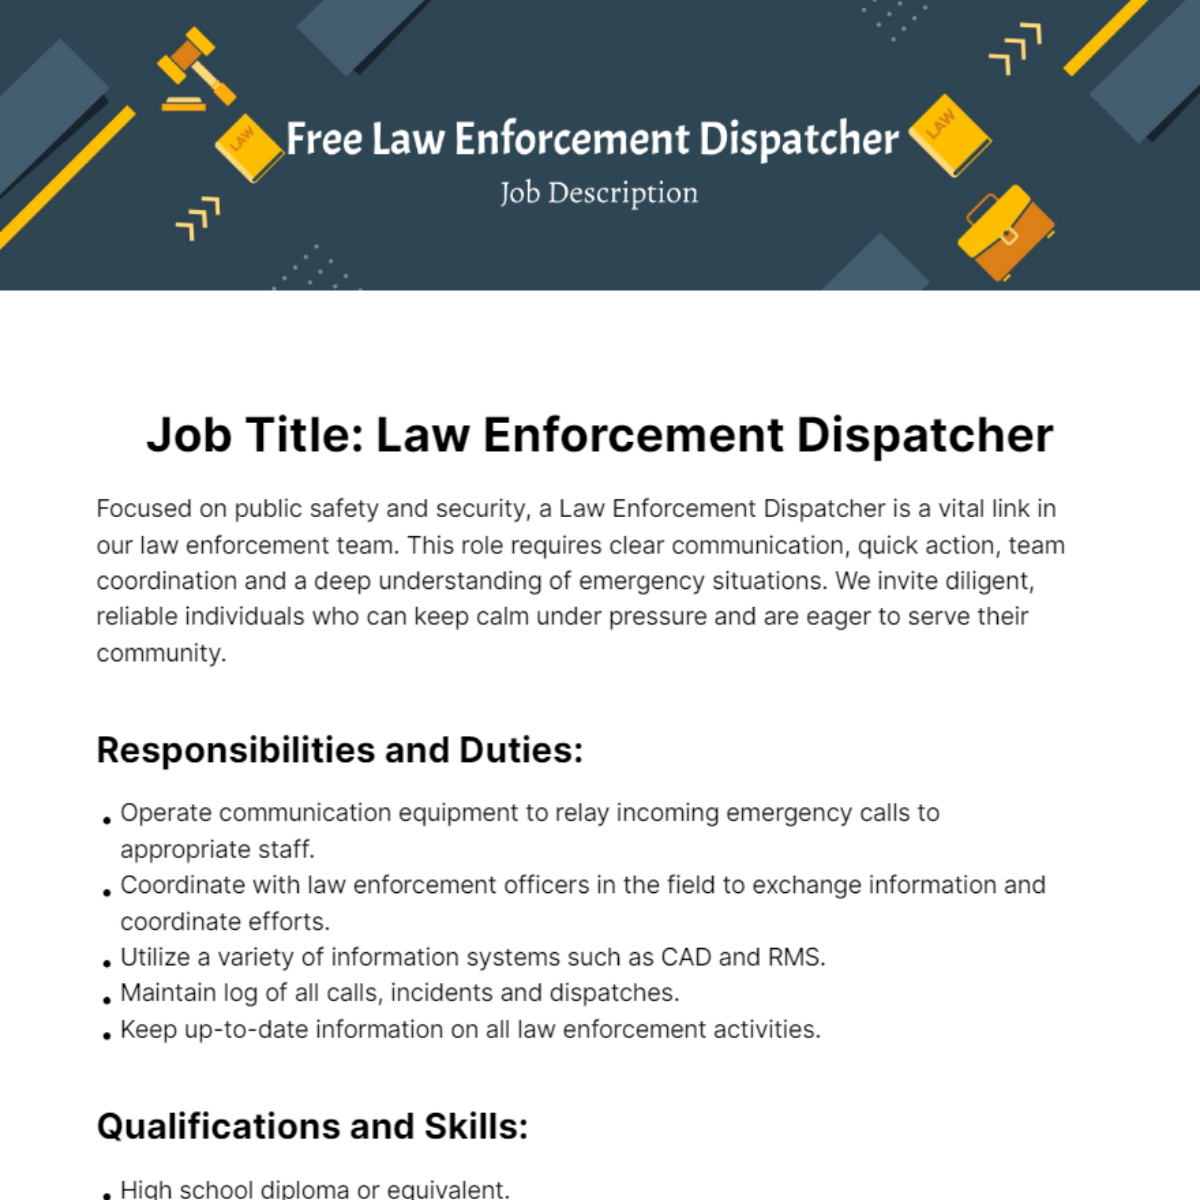 Free Law Enforcement Dispatcher Job Description Template